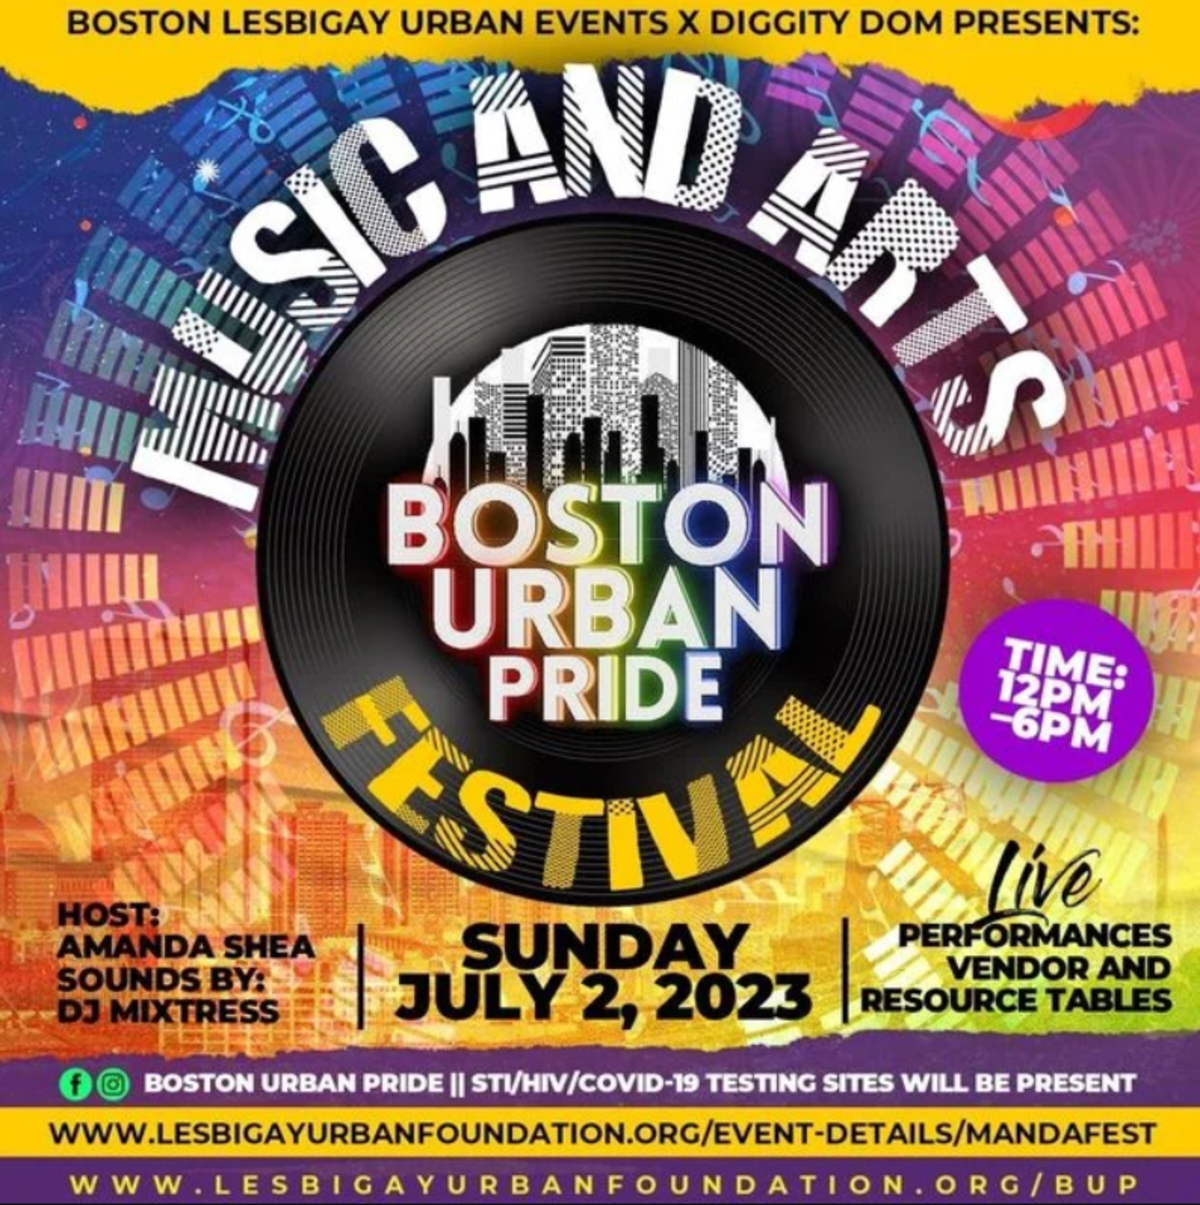 Boston Urban Pride event flyer